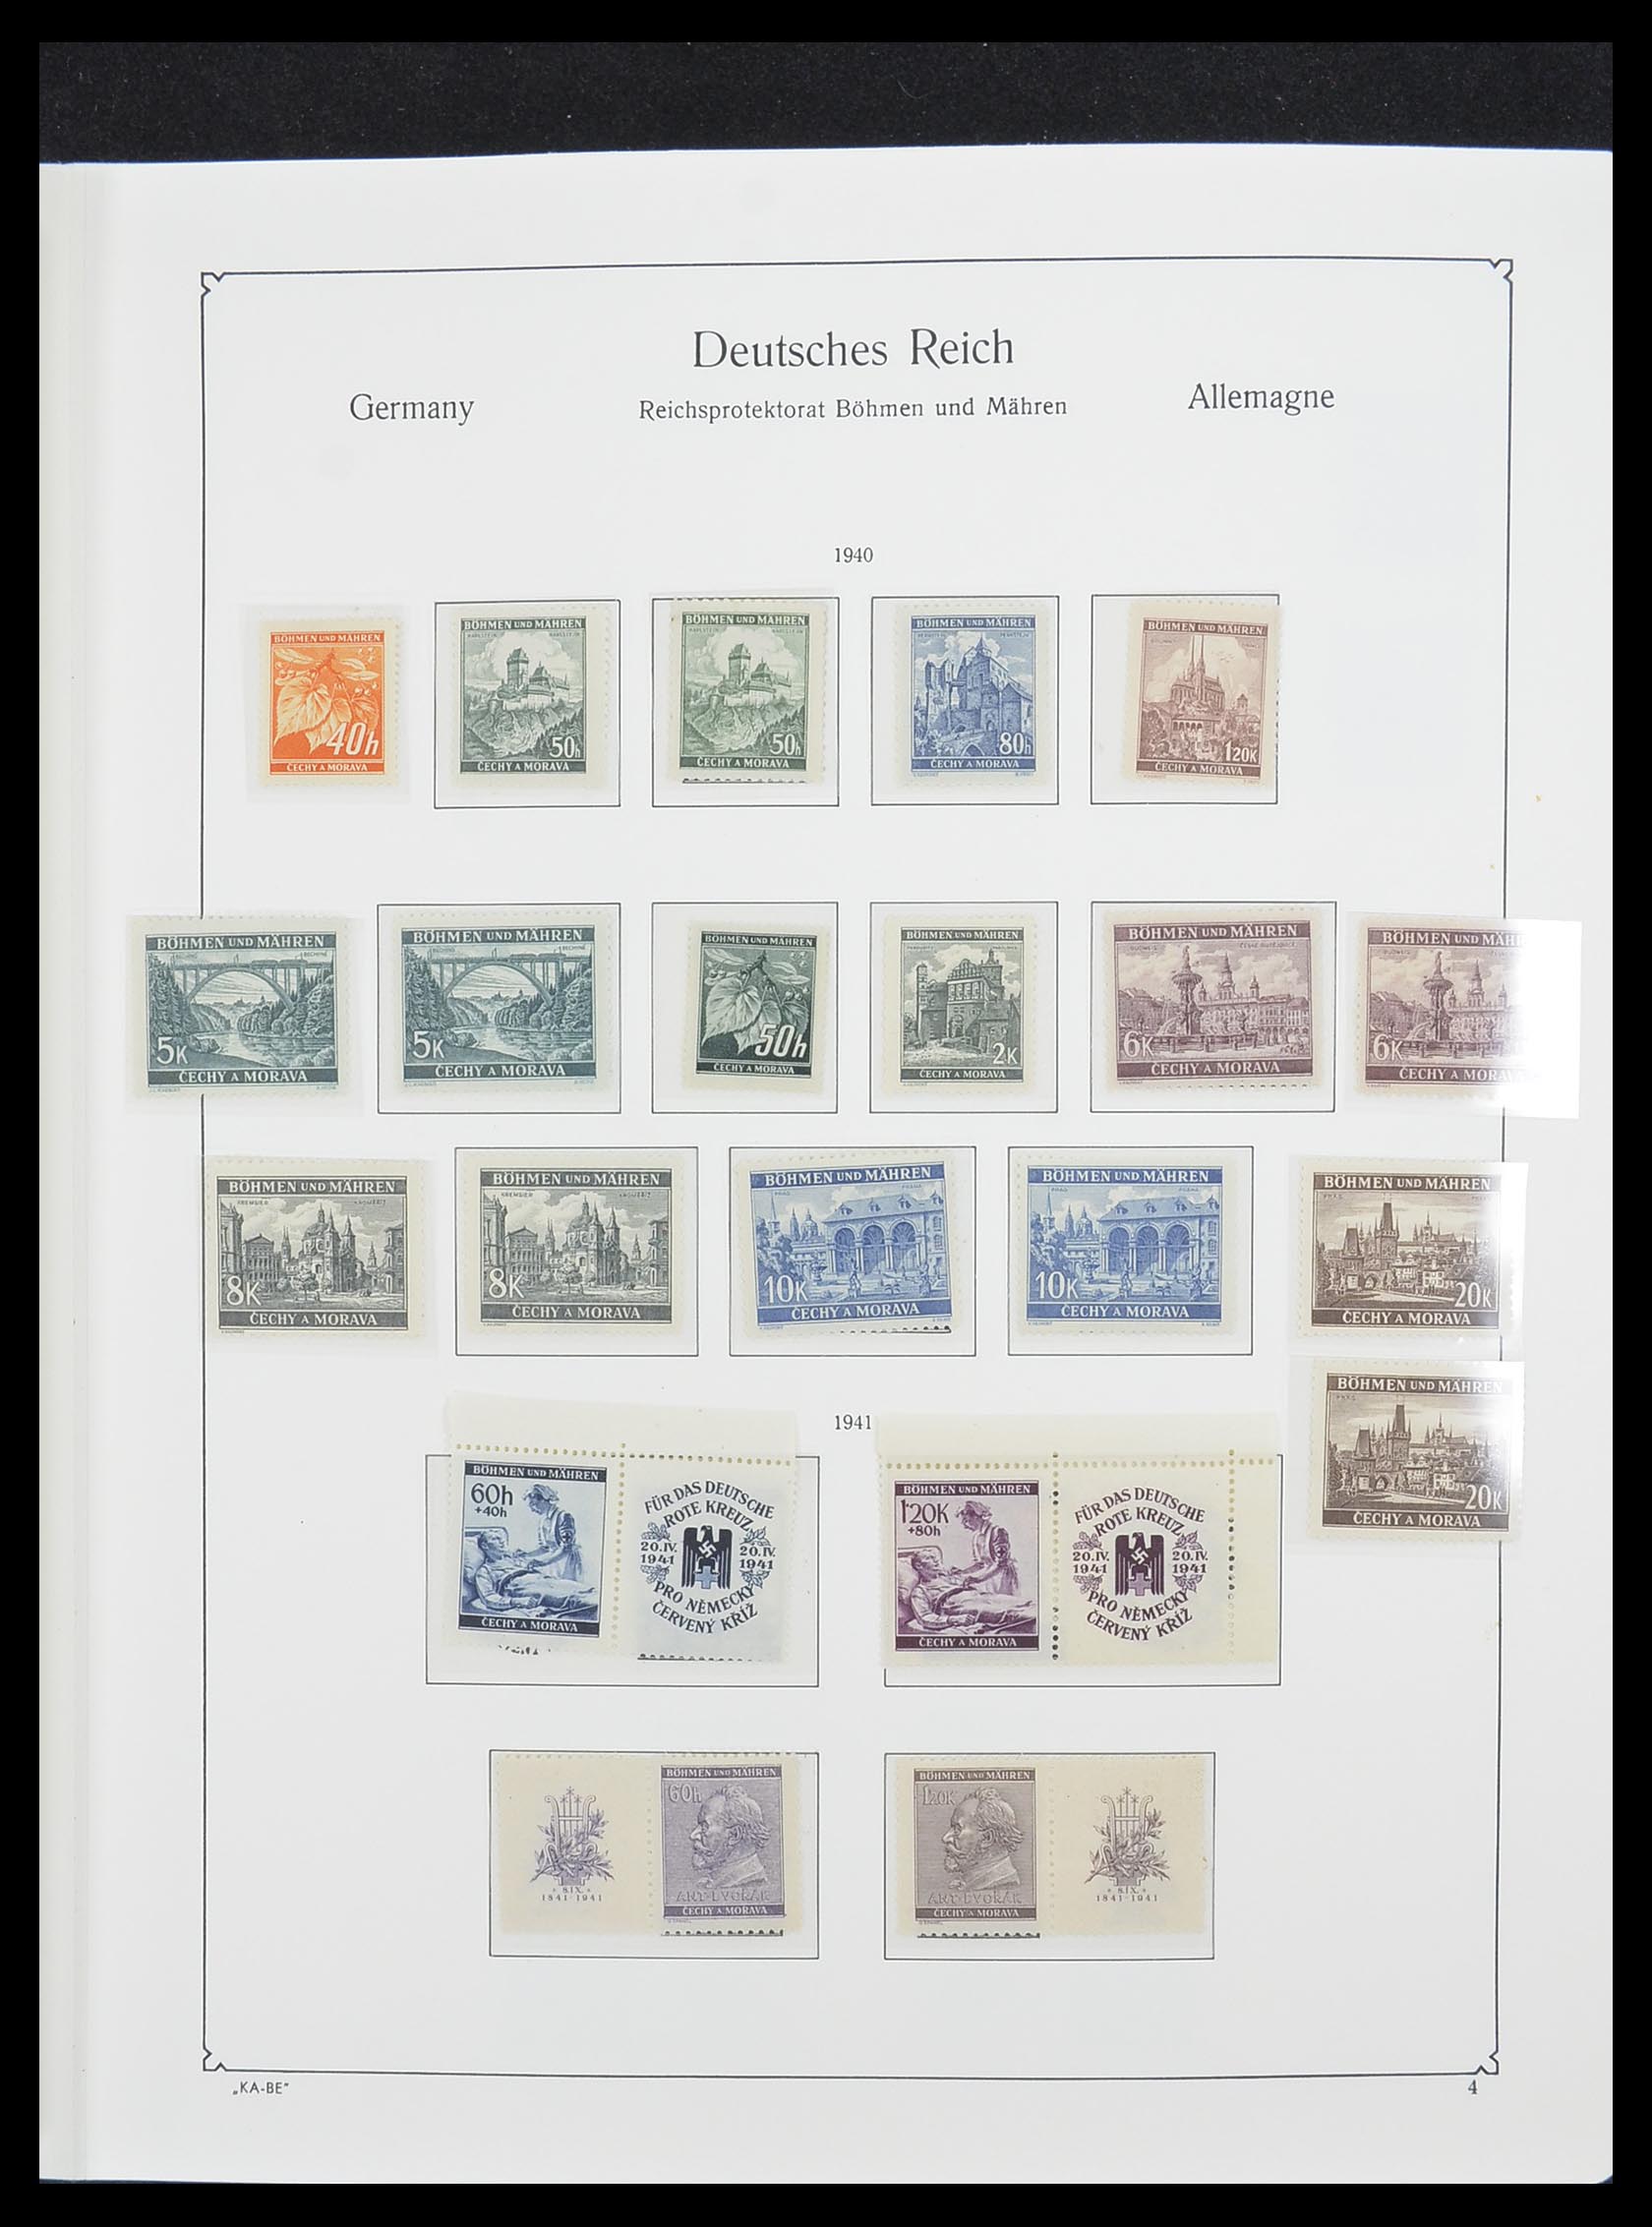 33360 005 - Stamp collection 33360 German occupation 2nd world war 1939-1945.